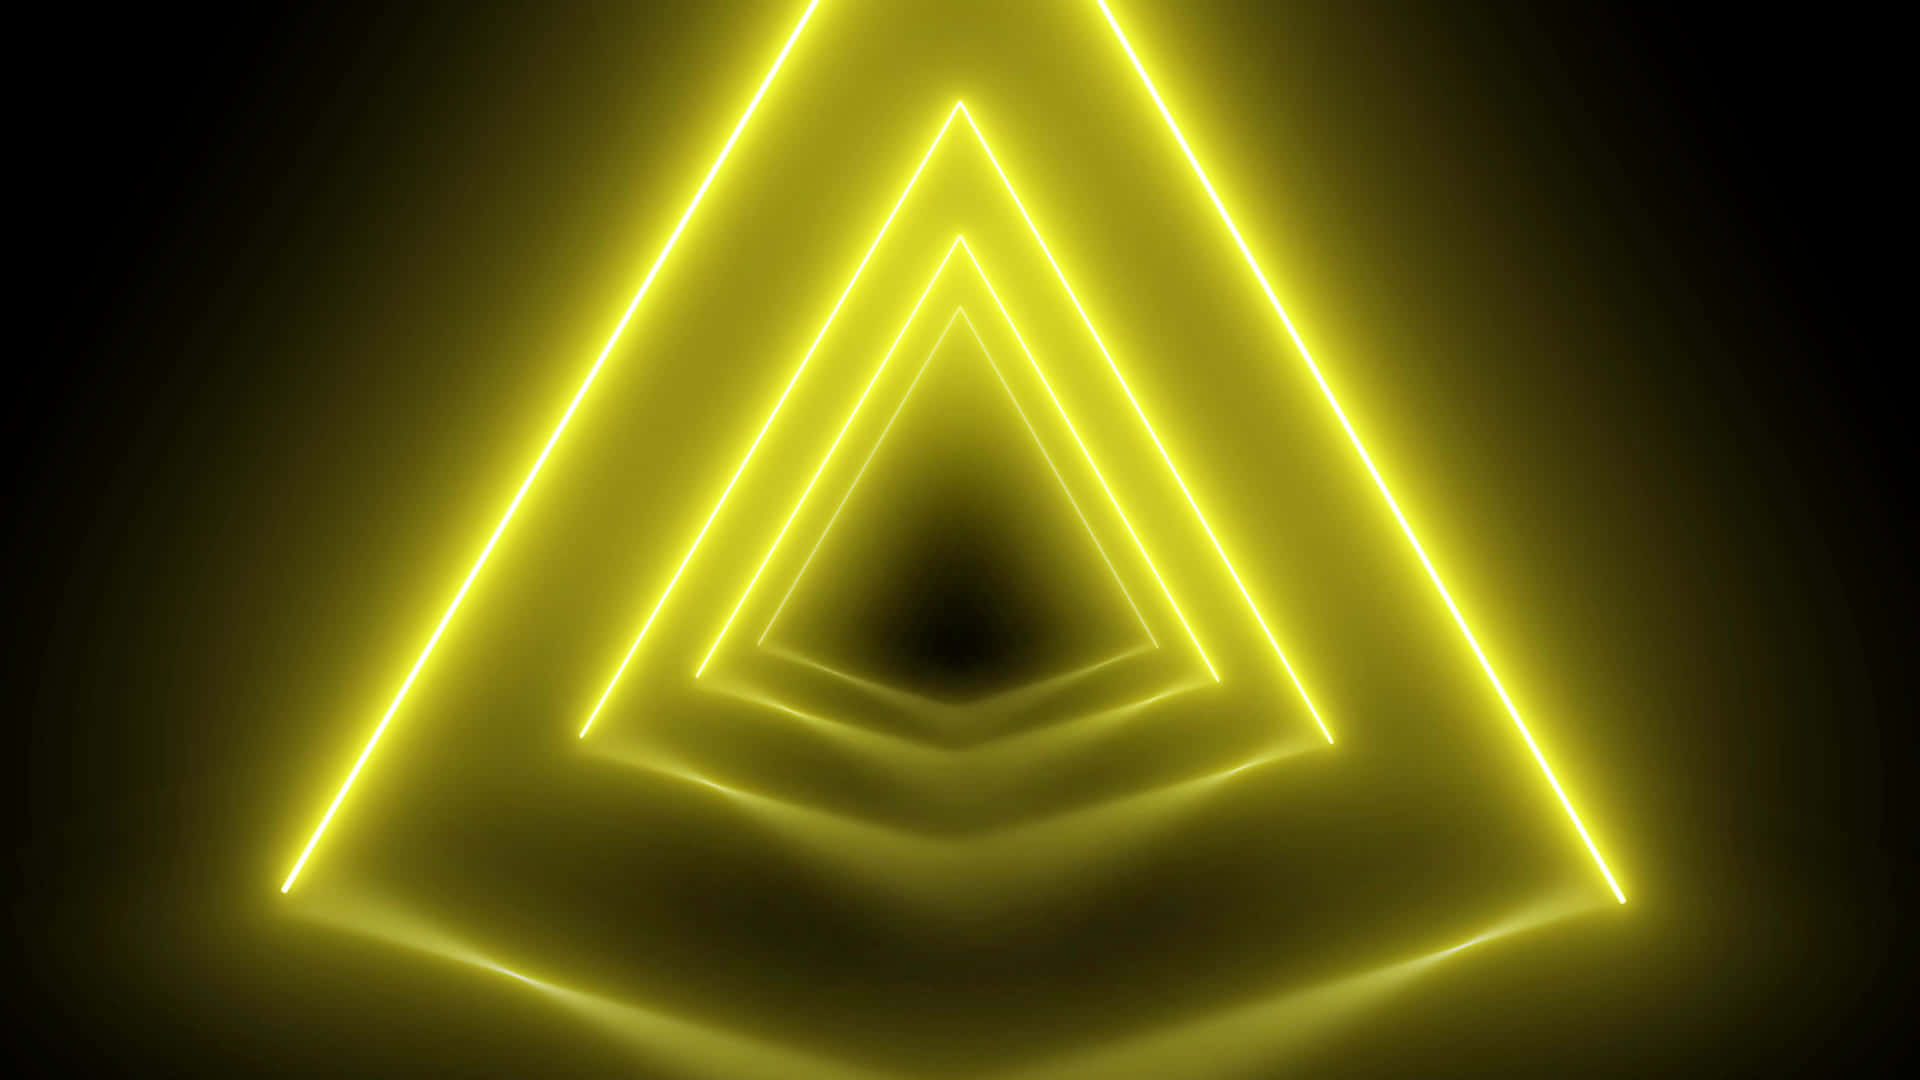 Patrónde Triángulos Amarillos Vibrantes. Fondo de pantalla